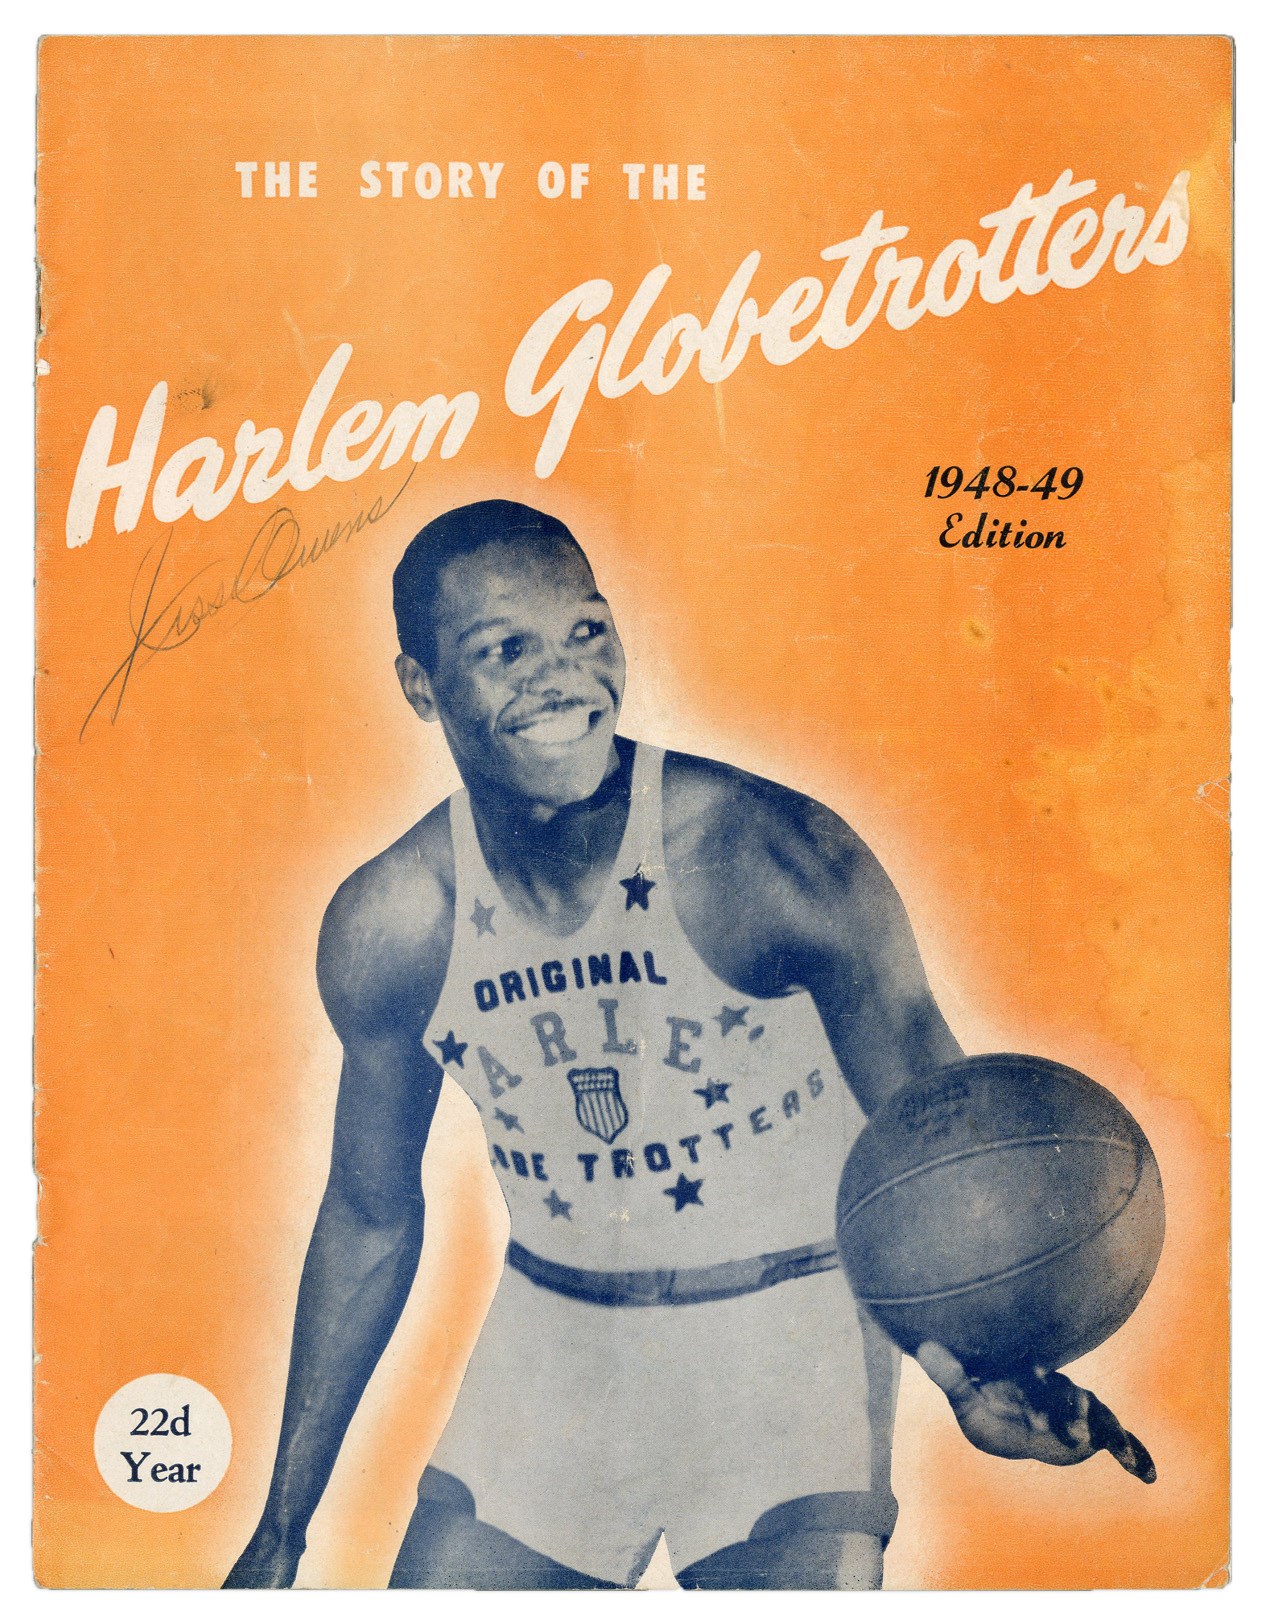 1948-49 Jesse Owens Signed Harlem Globetrotters Program (PSA)